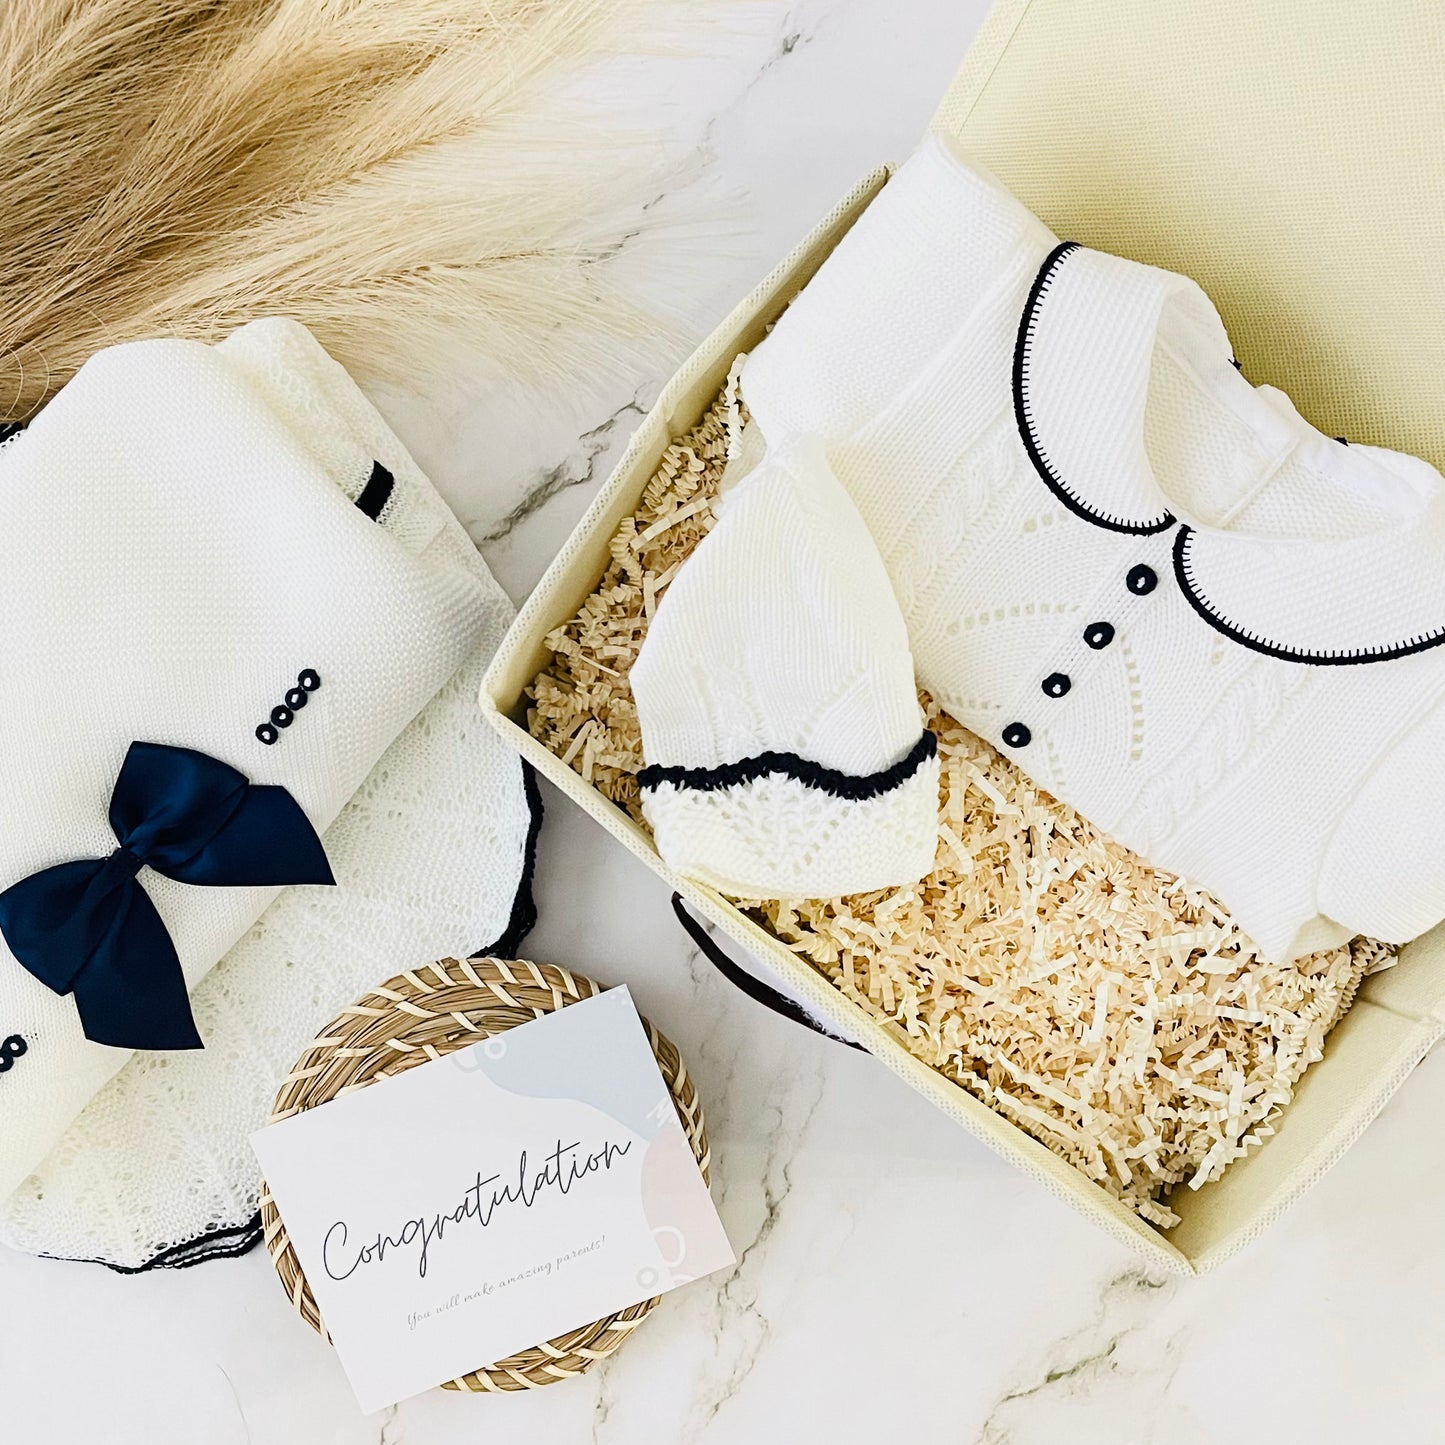 Baby Boy Knitted Set Luxury Box | GONUL MARINE Baby Gift Sets Baboxie 